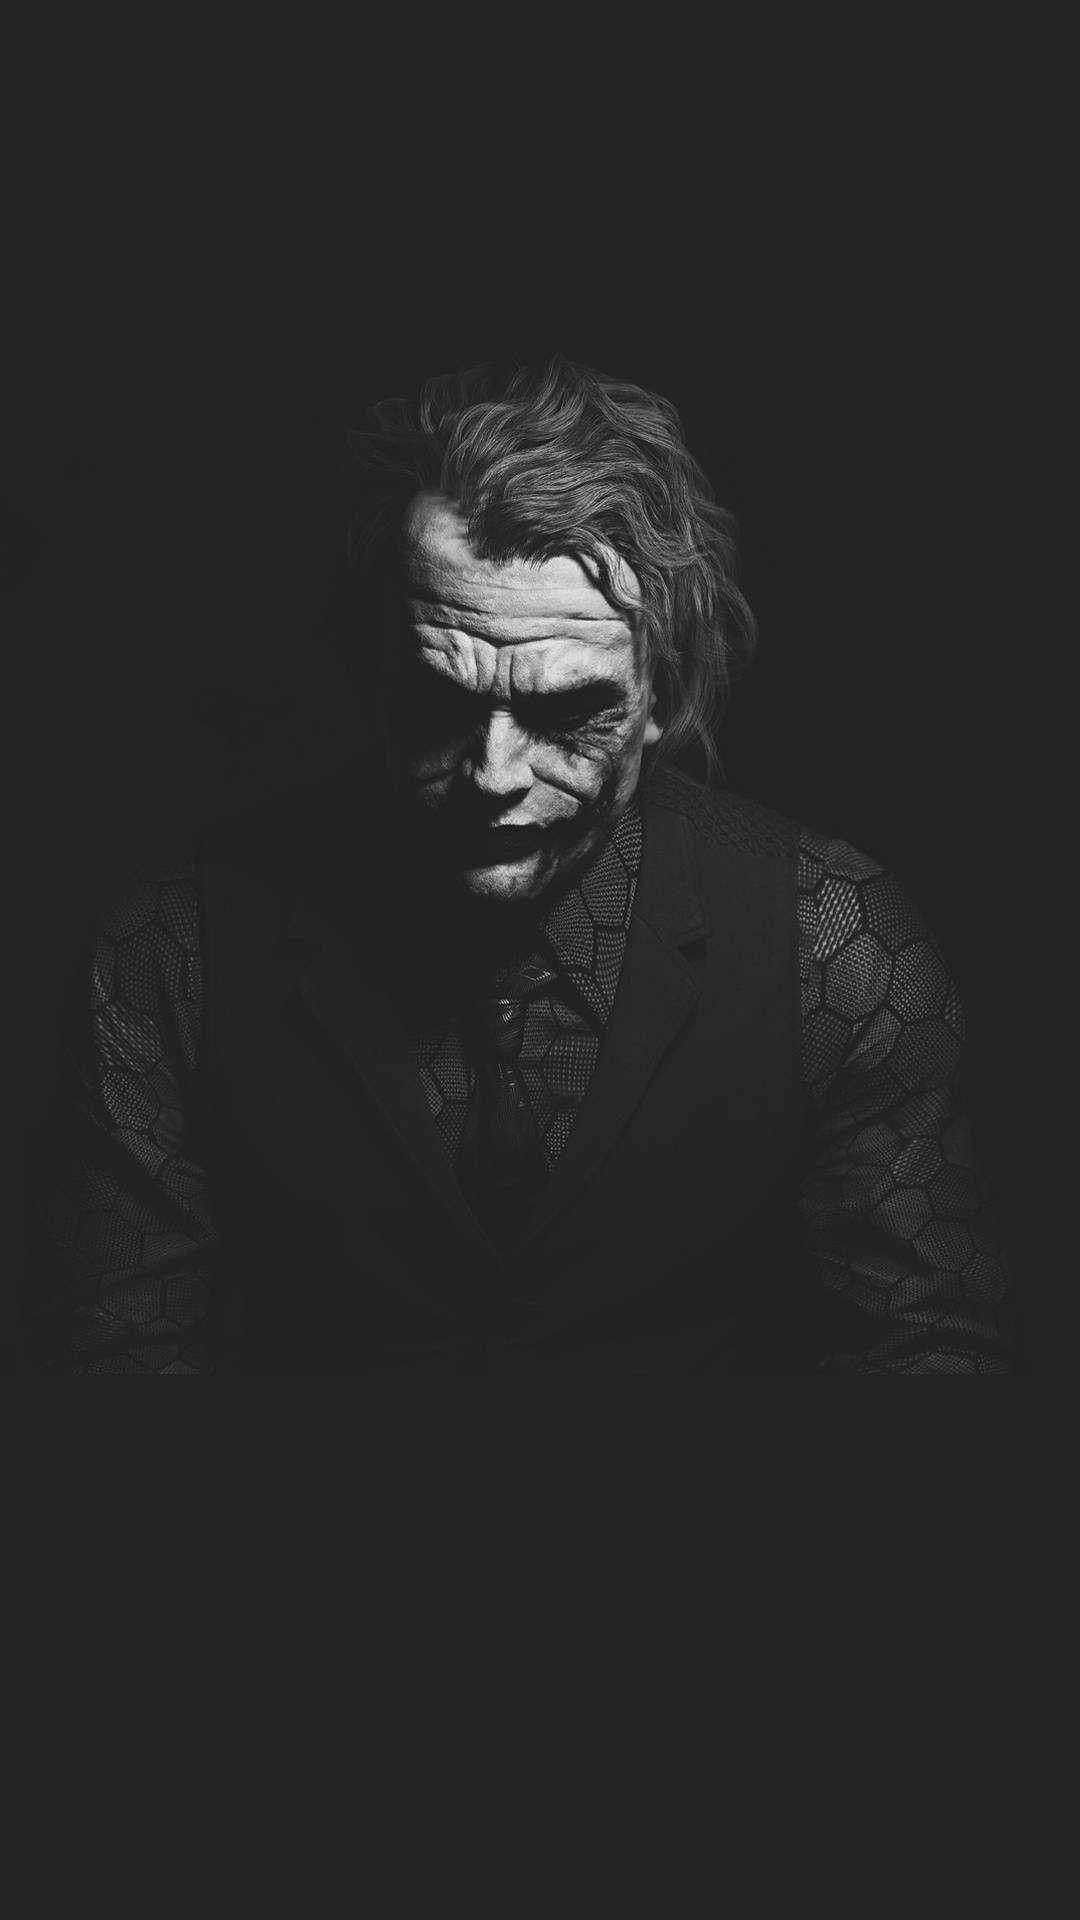 Why so serious. Joker wallpaper, Joker artwork, Joker pics